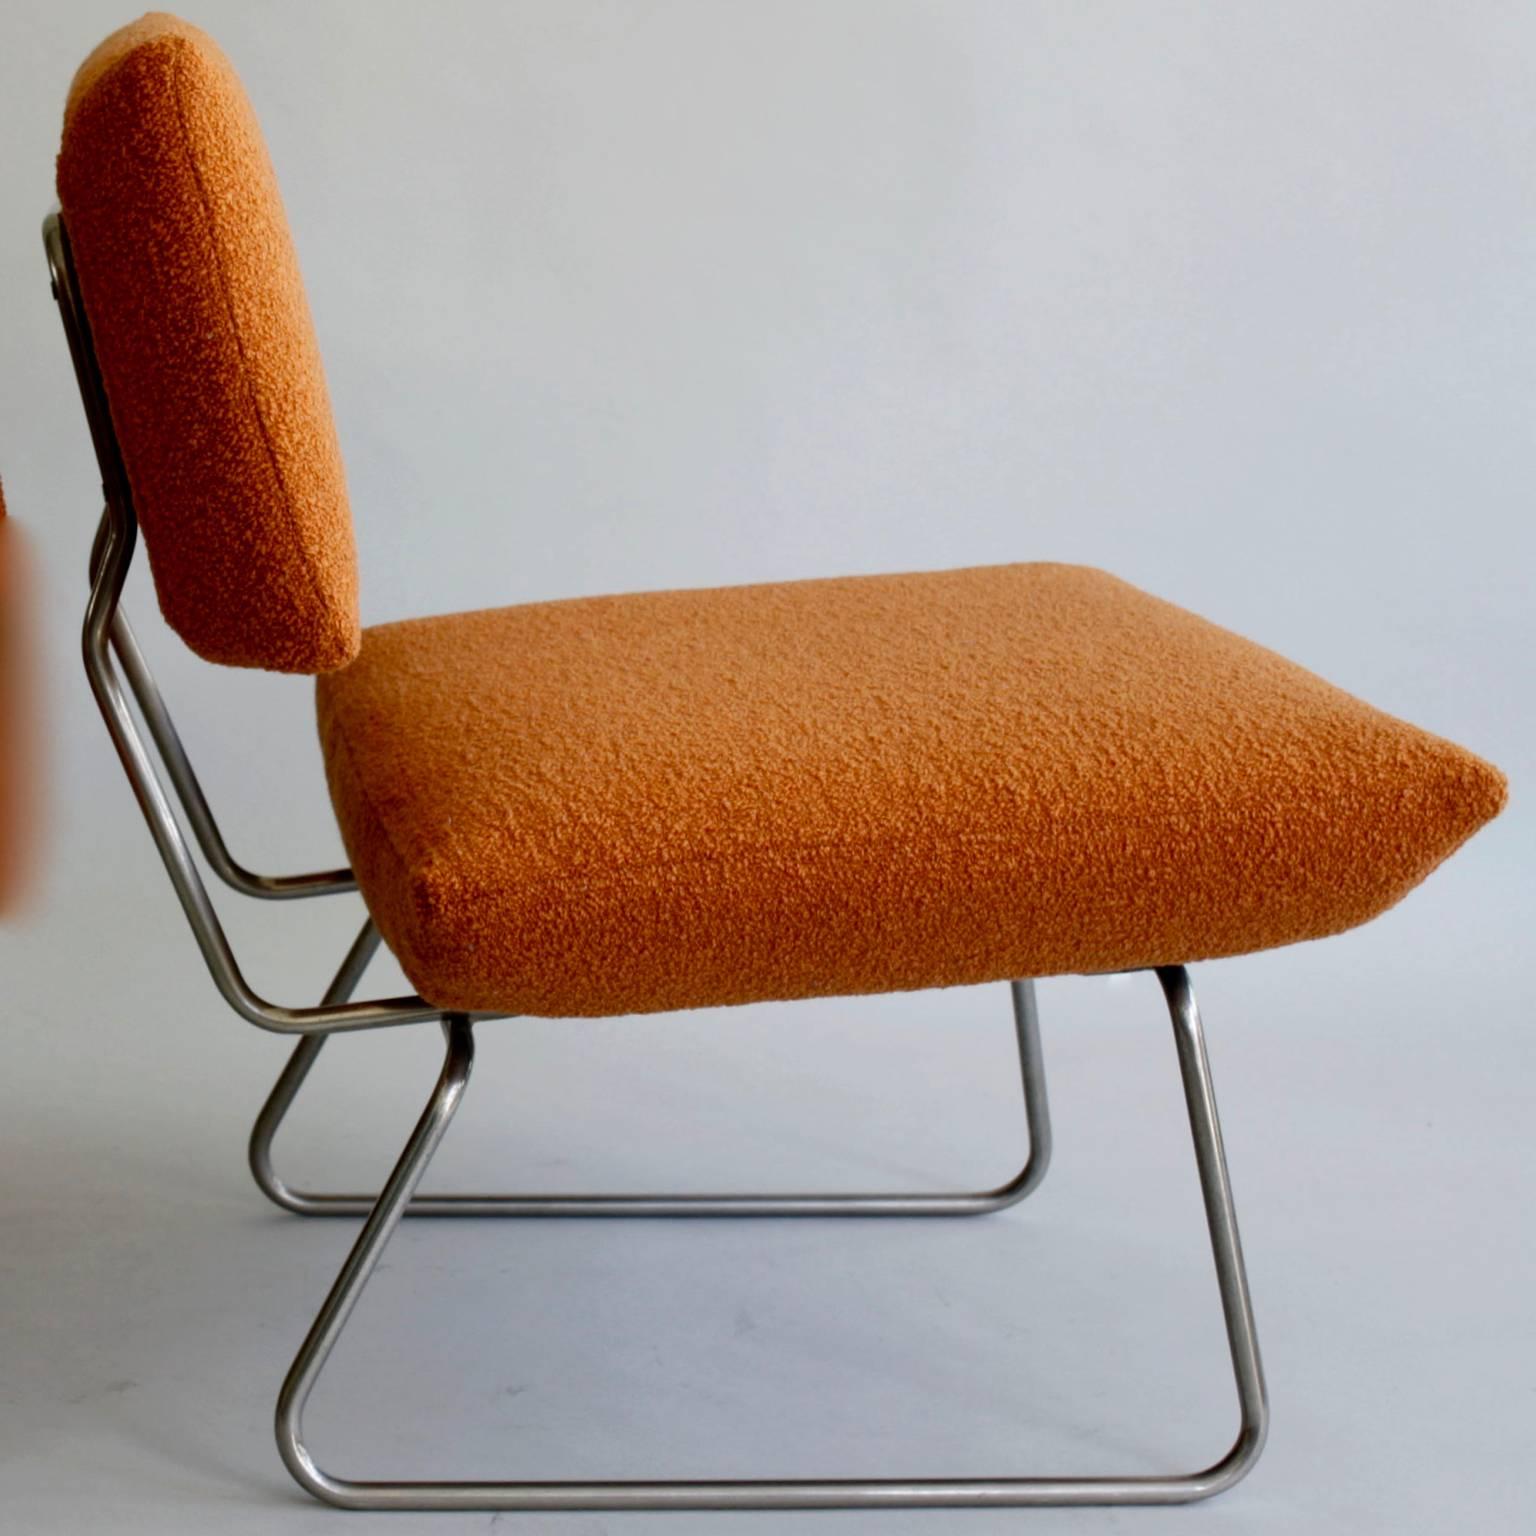 Two Arflex lounge chairs, Italian 1960s, re-upholstered in a woollen orange bouclé.